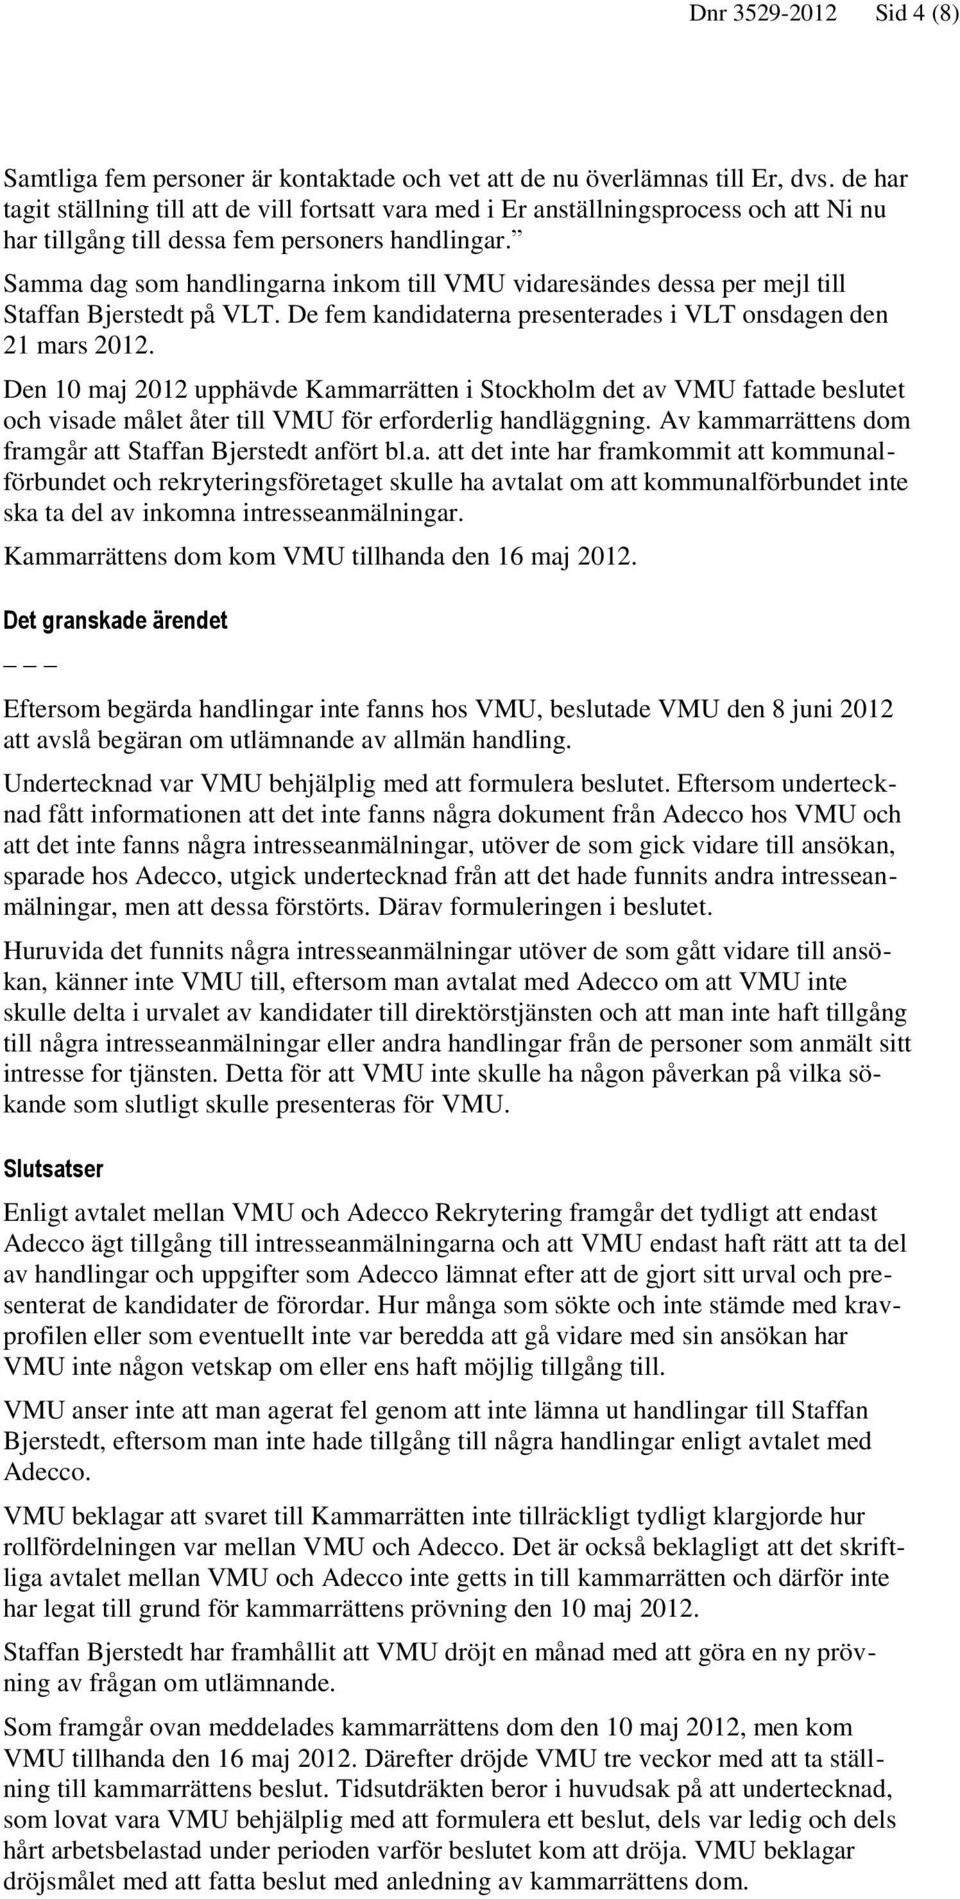 Samma dag som handlingarna inkom till VMU vidaresändes dessa per mejl till Staffan Bjerstedt på VLT. De fem kandidaterna presenterades i VLT onsdagen den 21 mars 2012.